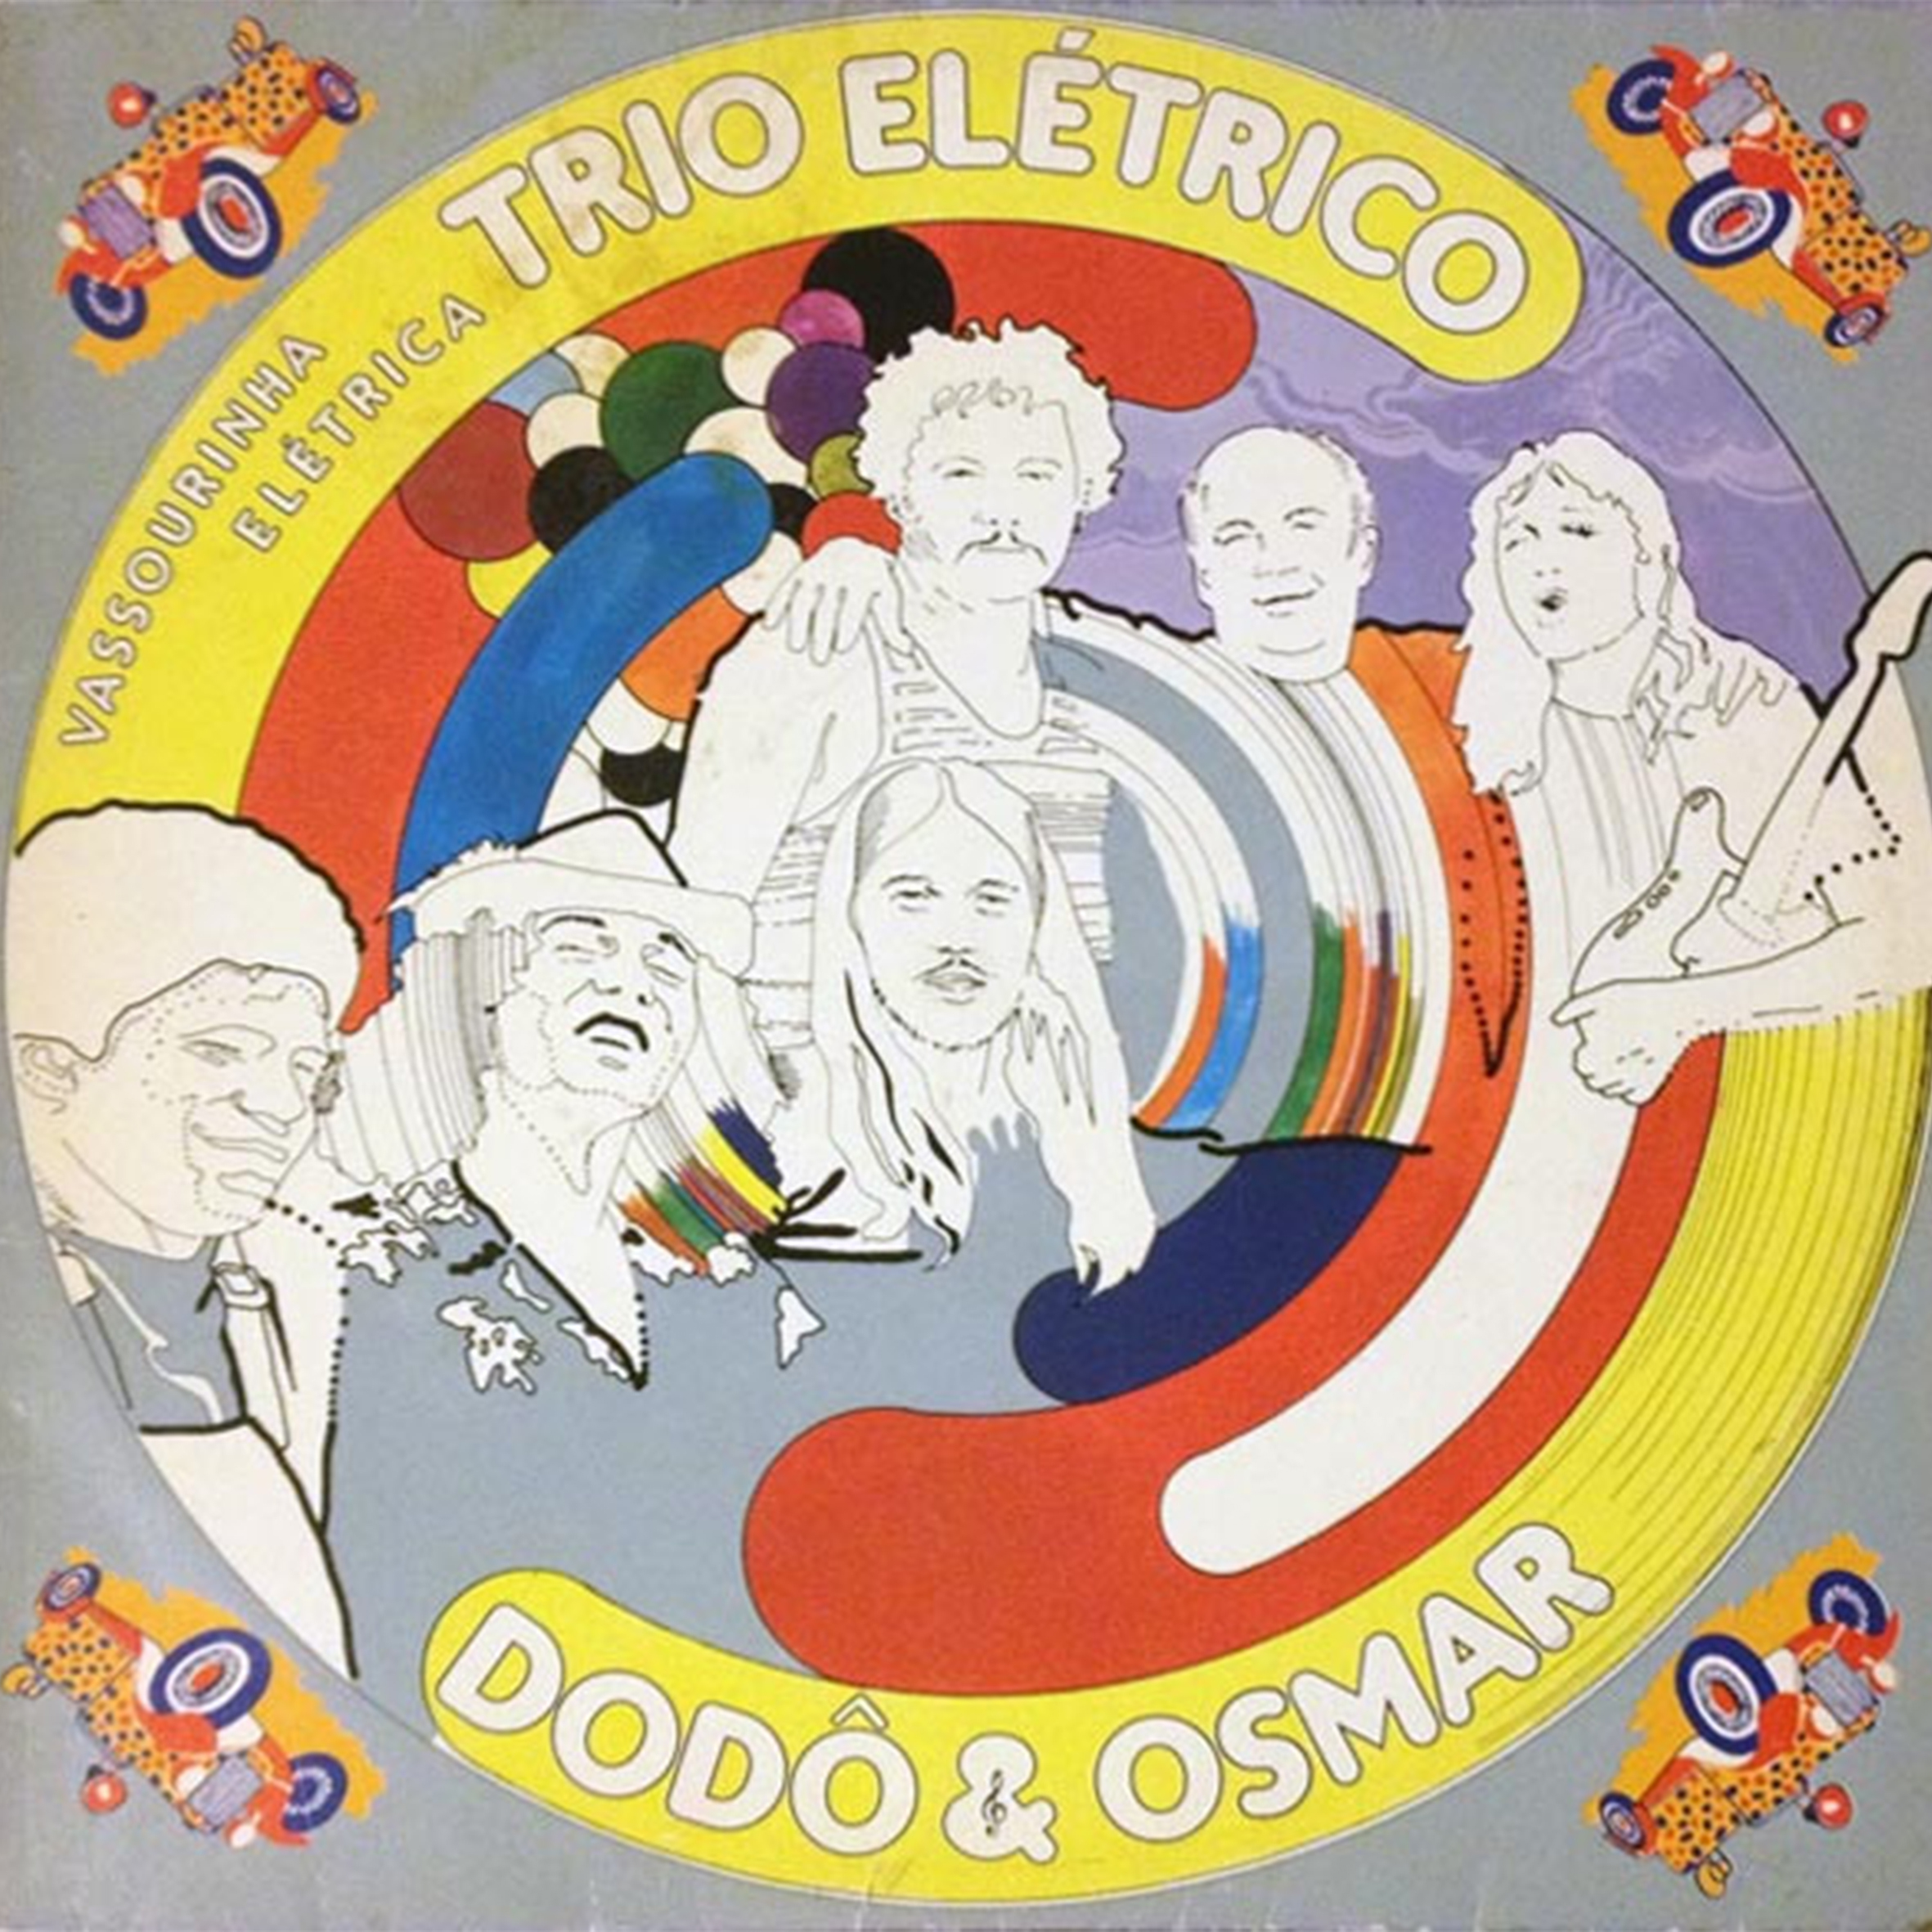 Vinil - Trio Eletrico Dodo e Osmar - Vassourinha Elétrica